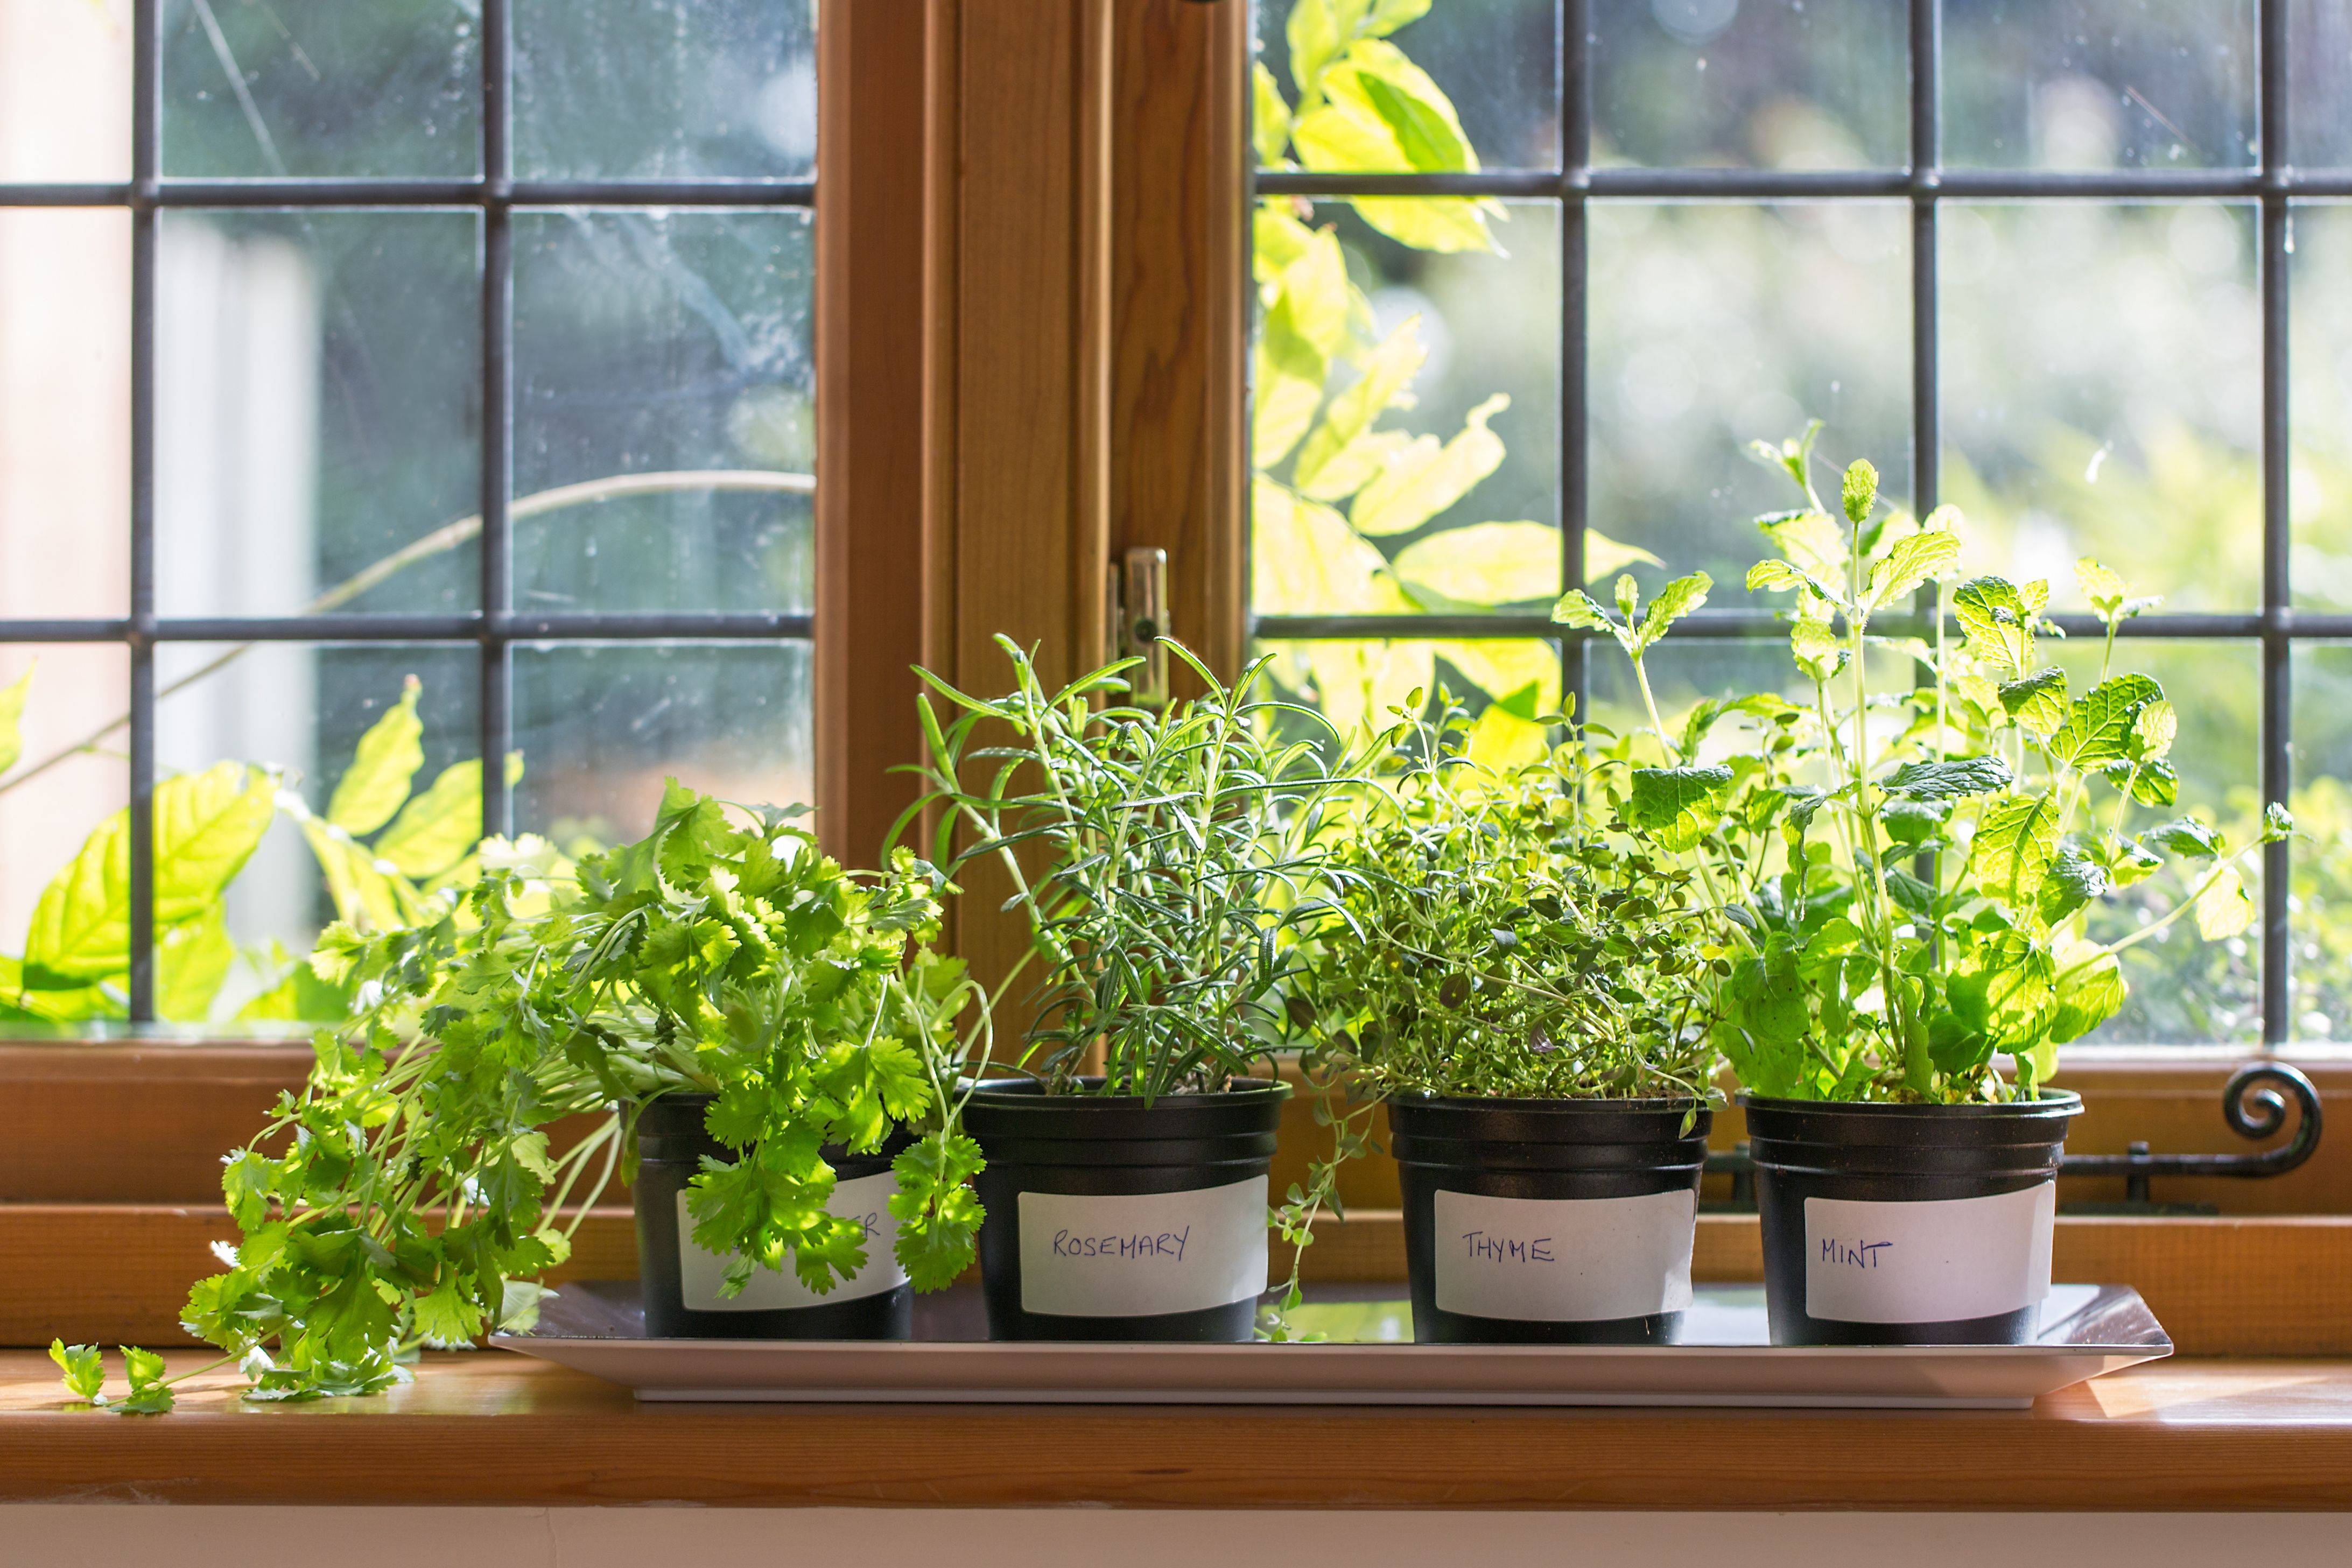 9 видов полезной зелени на подоконнике, выращиваем к новому году!